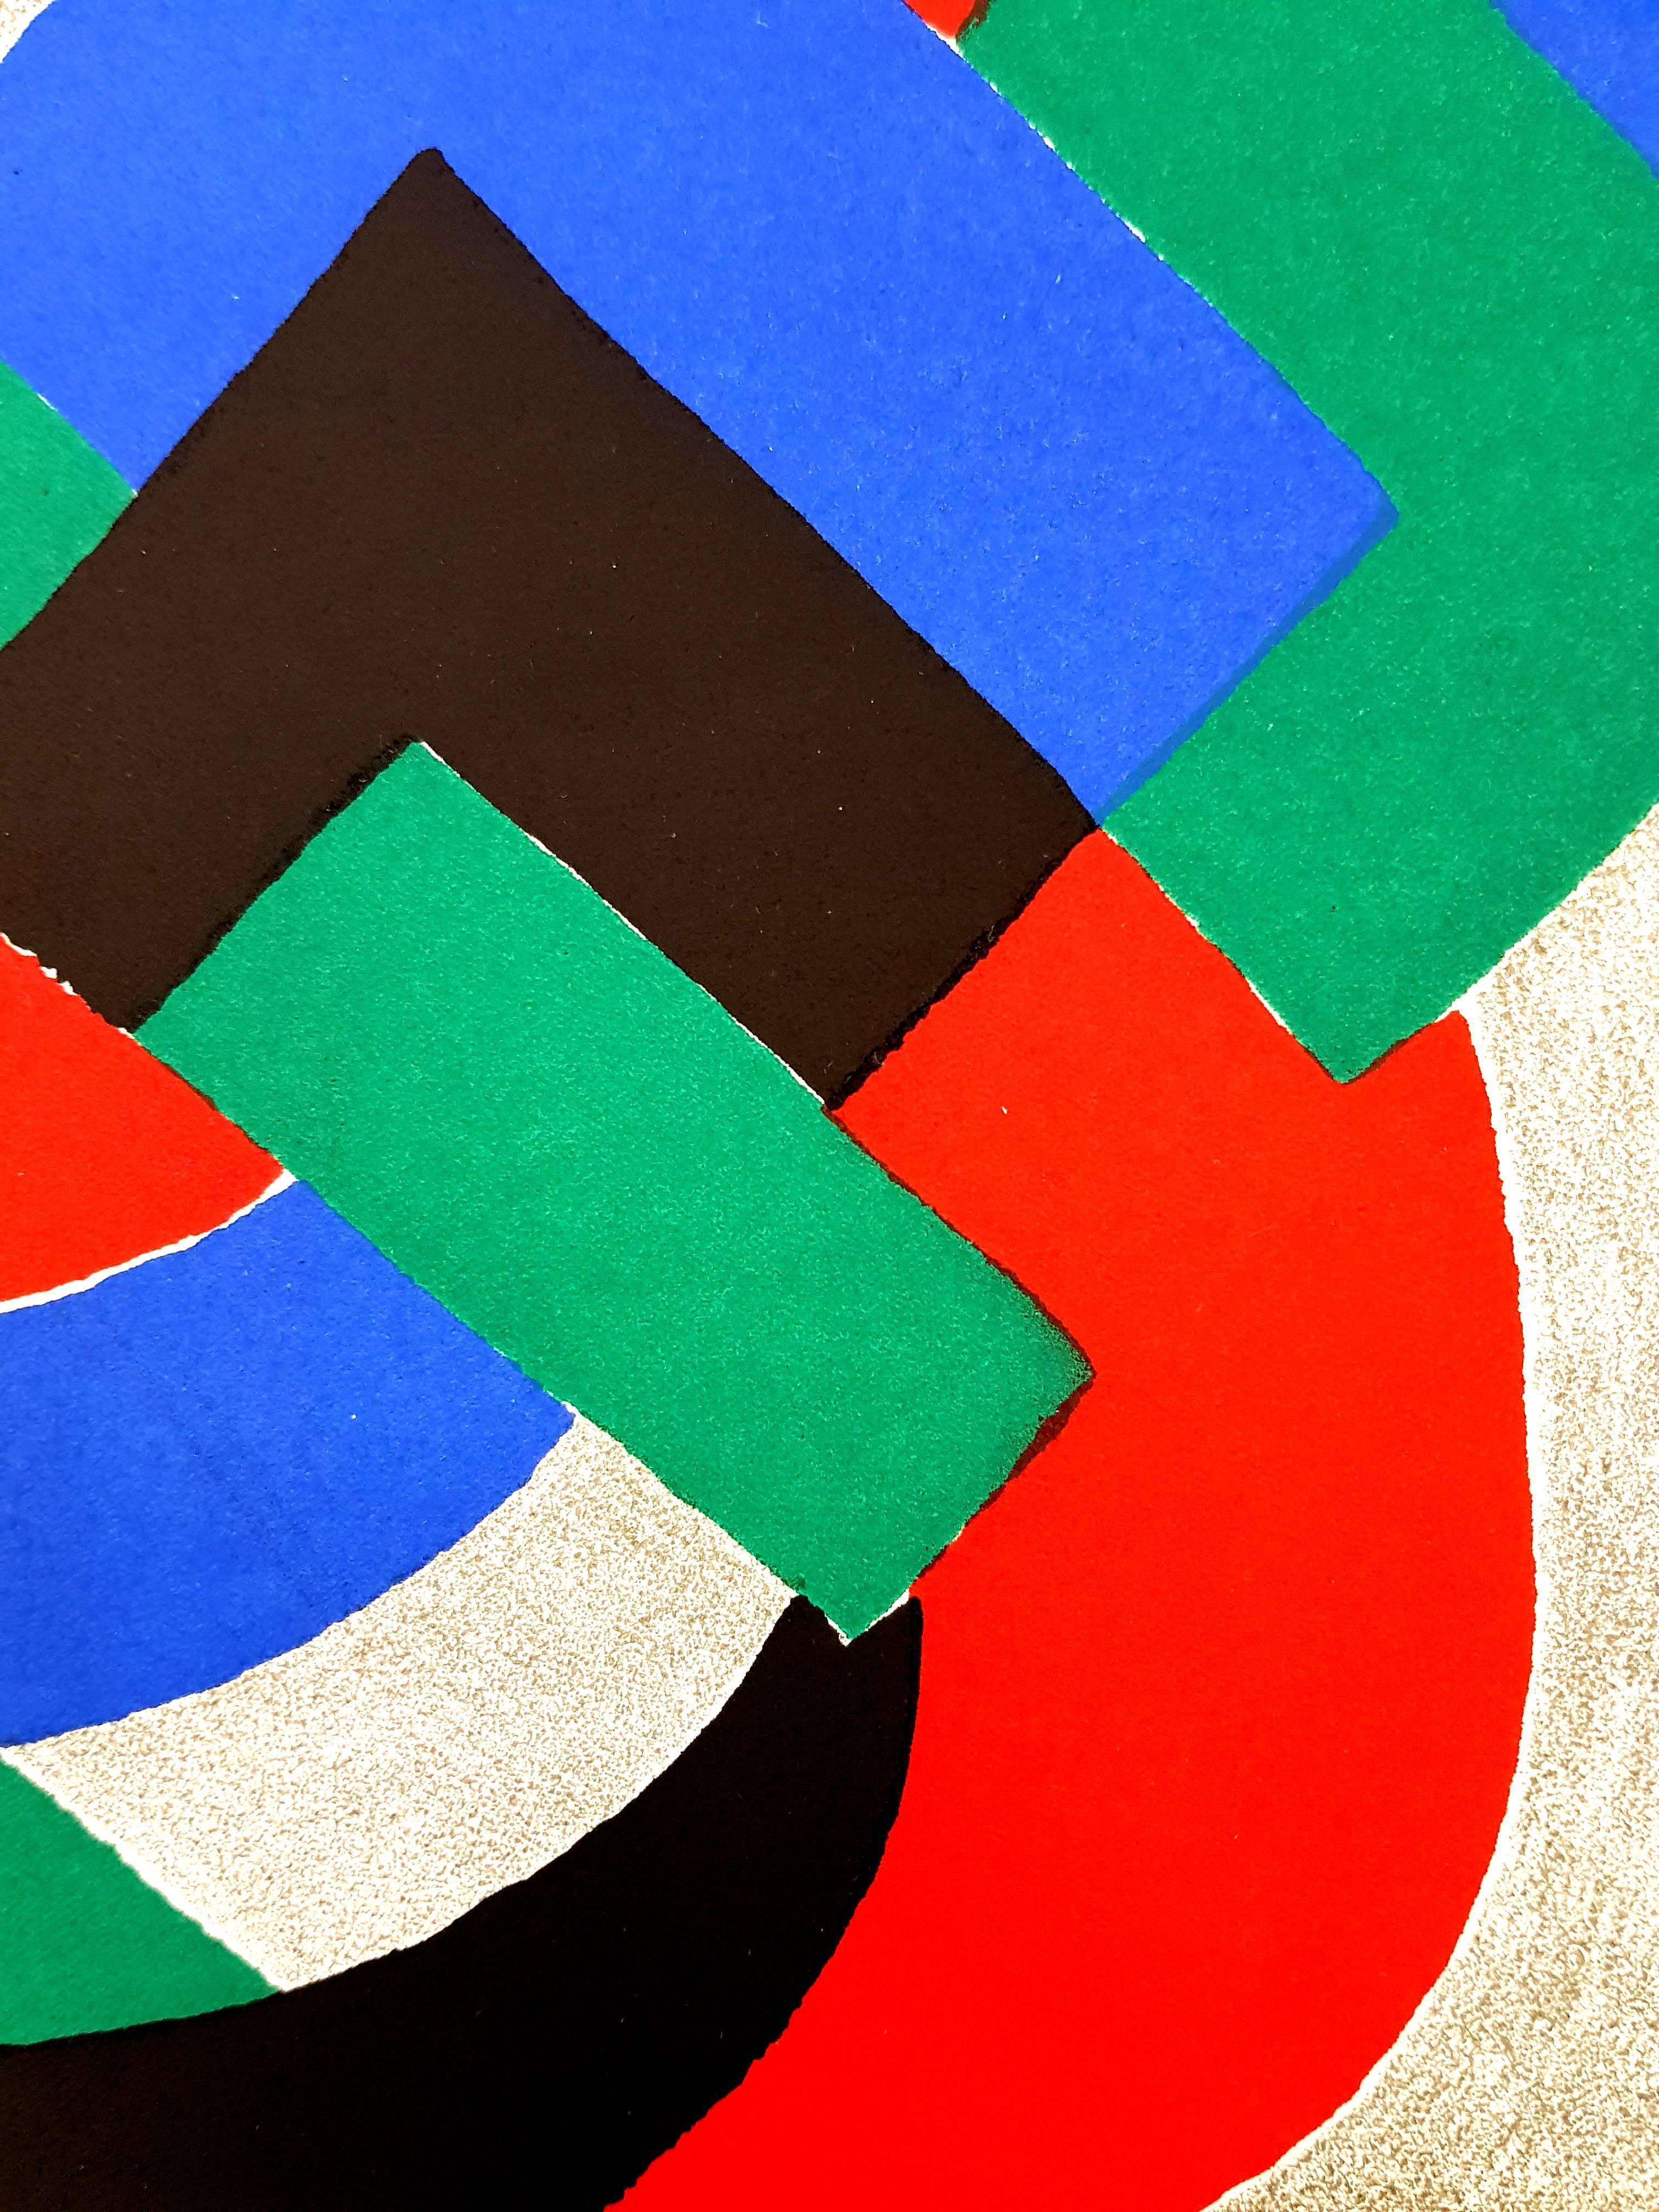 Sonia Delaunay - Composition 
Lithographie originale
1969
Dimensions : 32 x 25 cm
Revue XXe Siècle 
Cahiers d'art publiés sous la direction de G. di San Lazzaro.

Sonia Delaunay était connue pour sa vive utilisation de la couleur et ses motifs